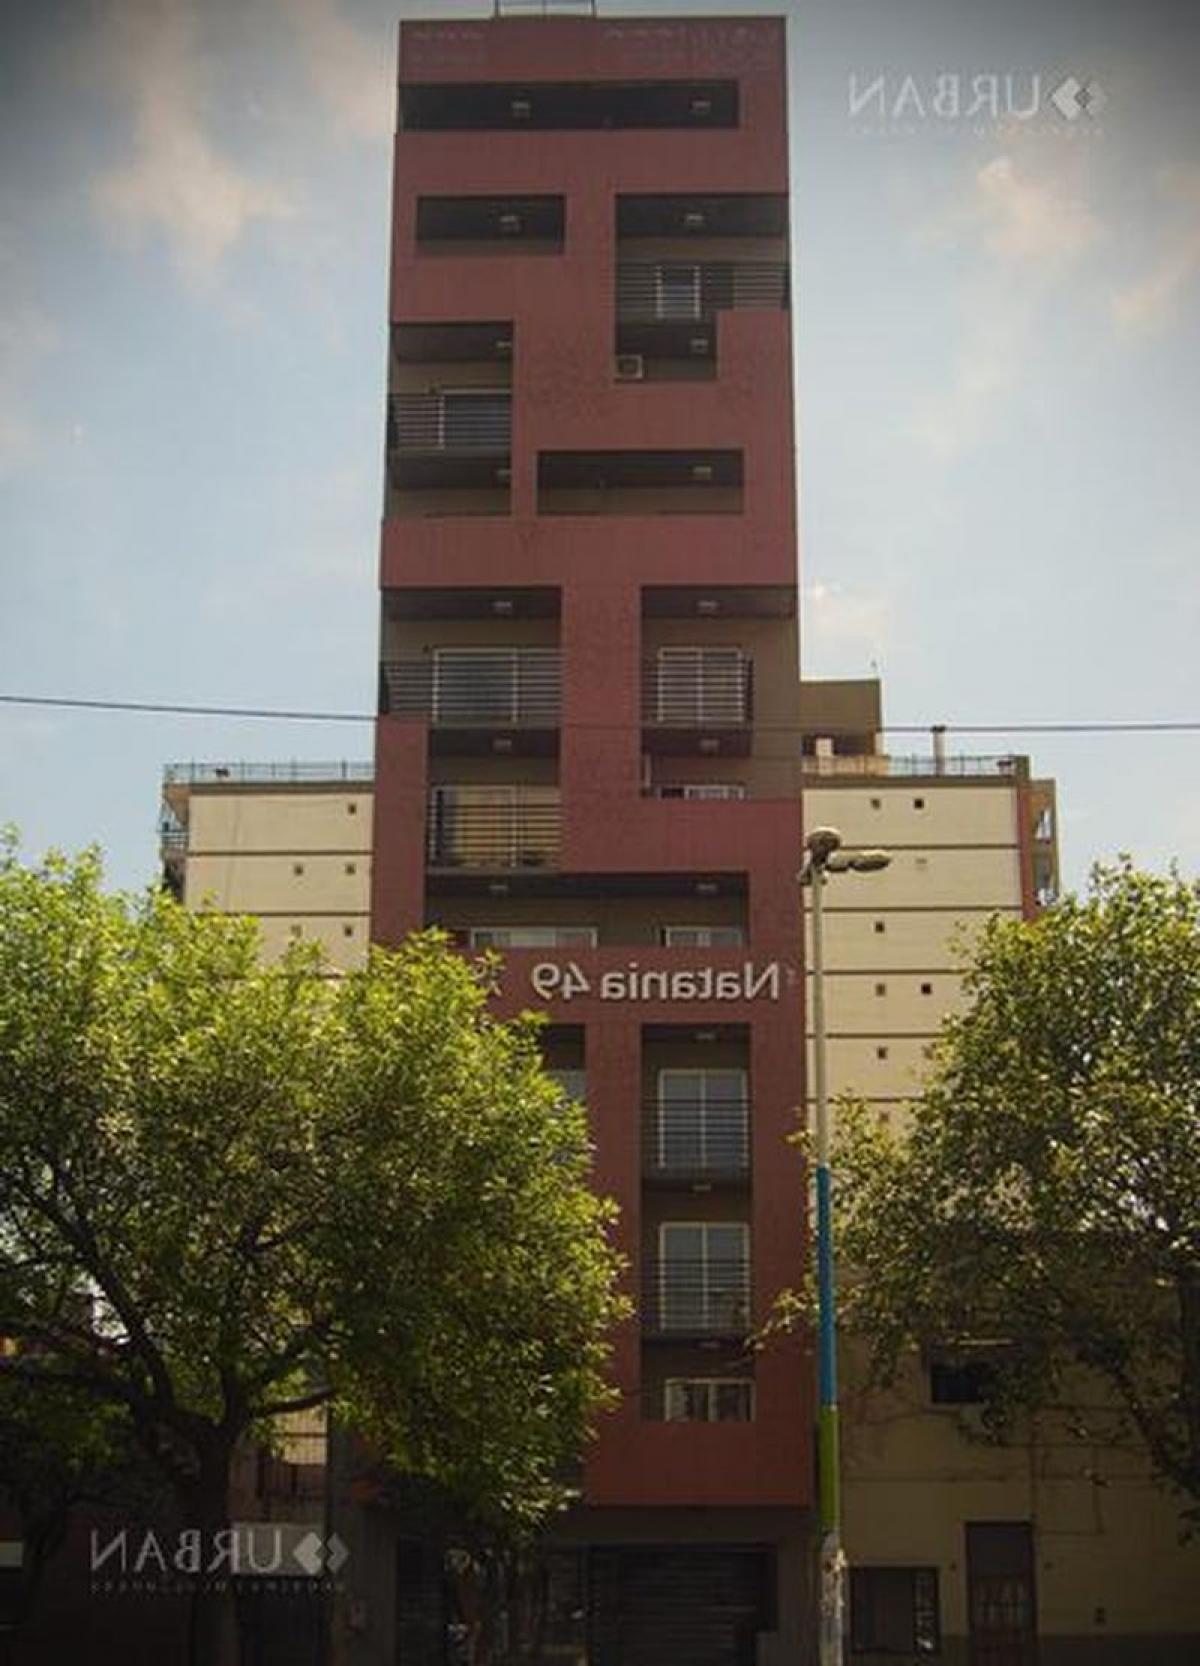 Picture of Apartment For Sale in Tucuman, Tucuman, Argentina